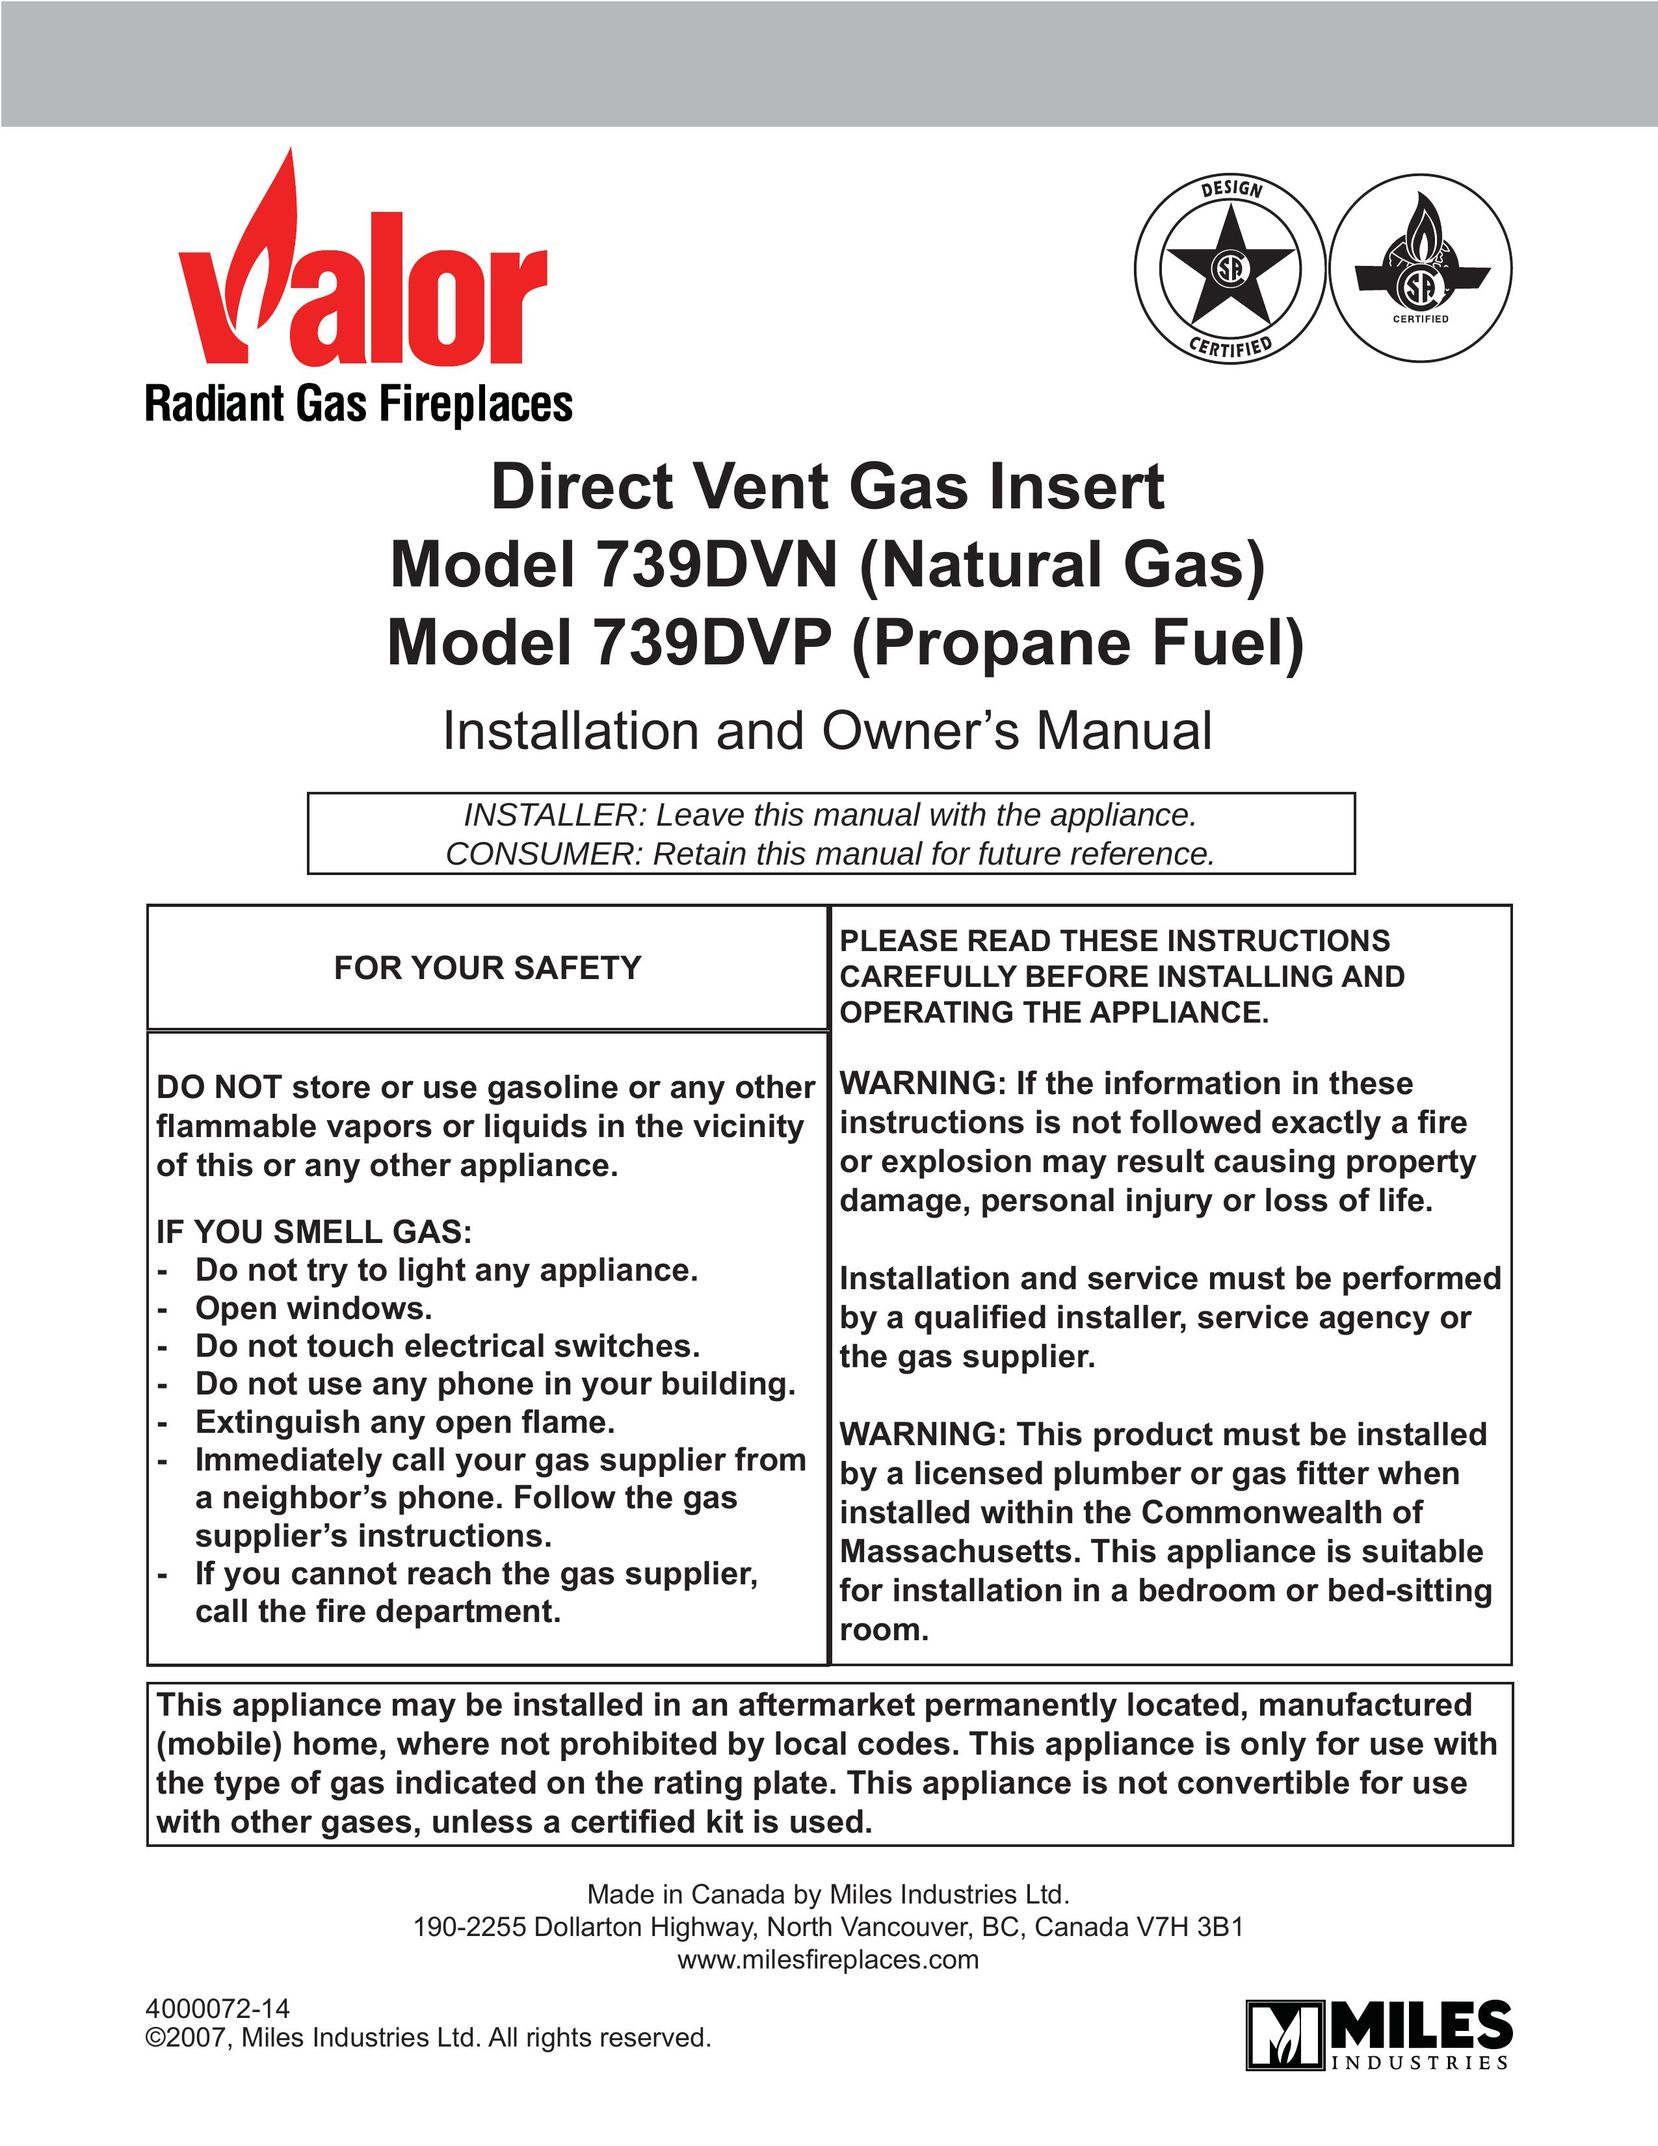 Valor Auto Companion Inc. 739DVN Indoor Fireplace User Manual